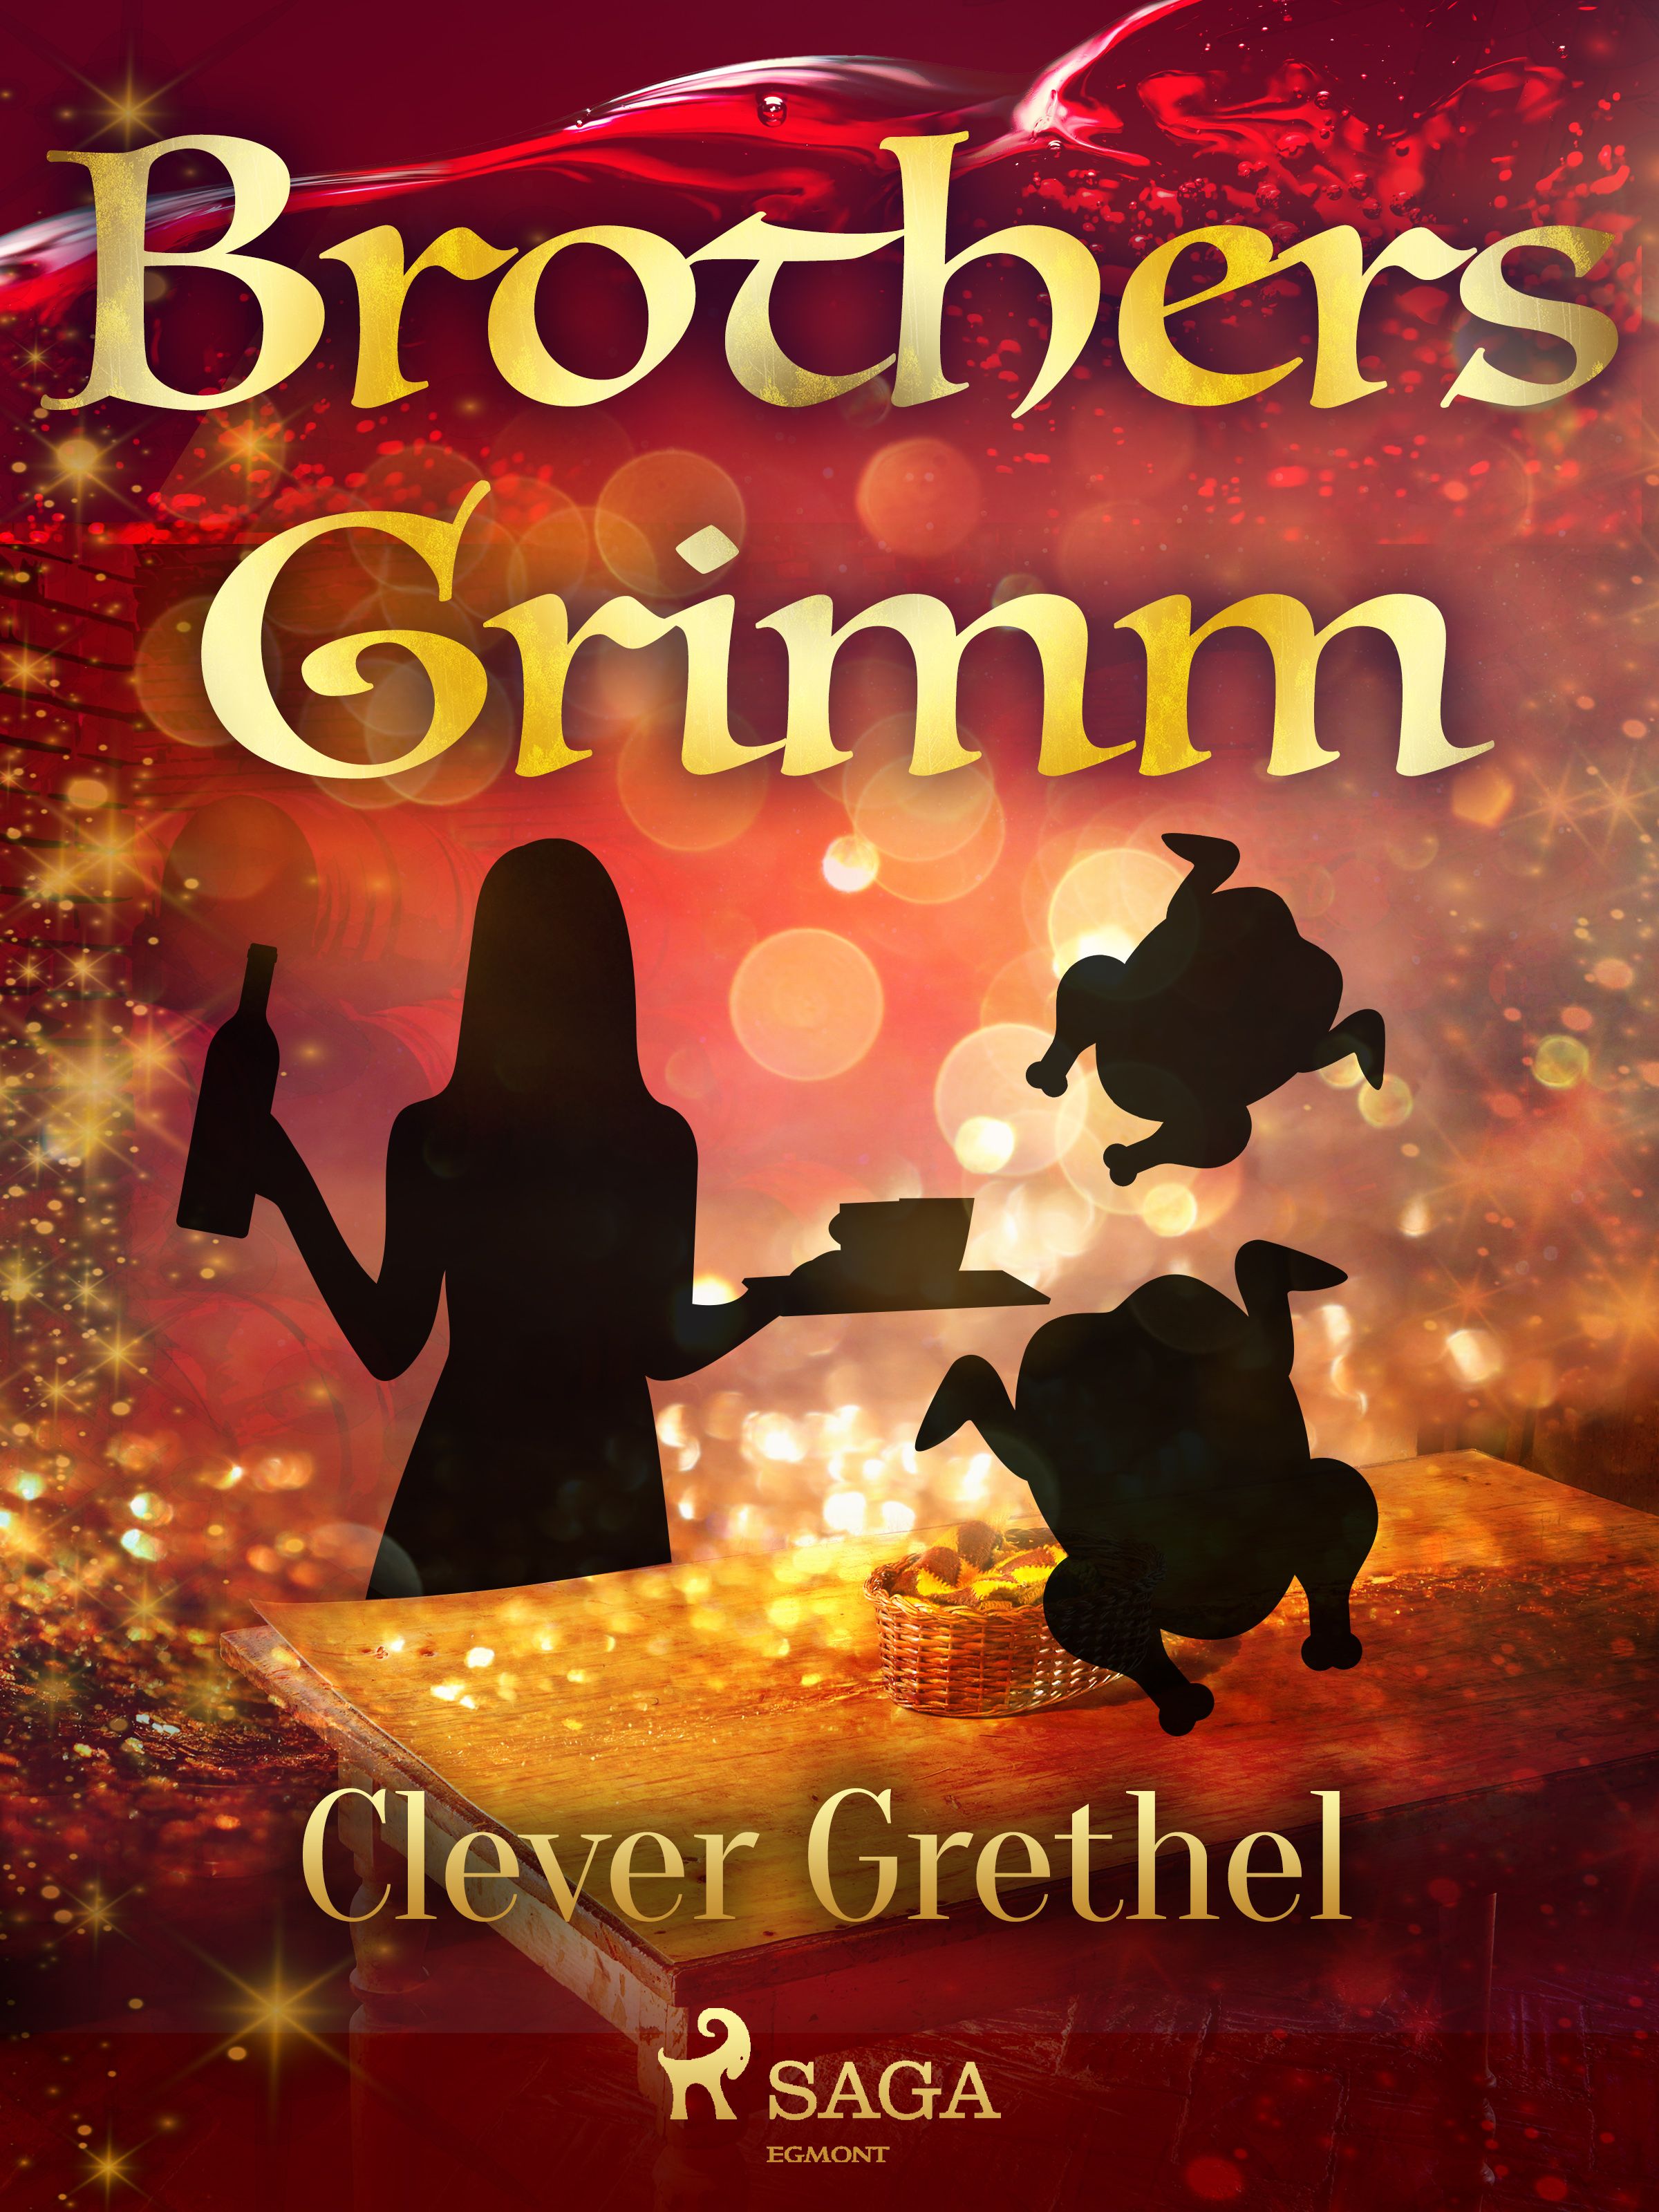 Clever Grethel, e-bog af Brothers Grimm